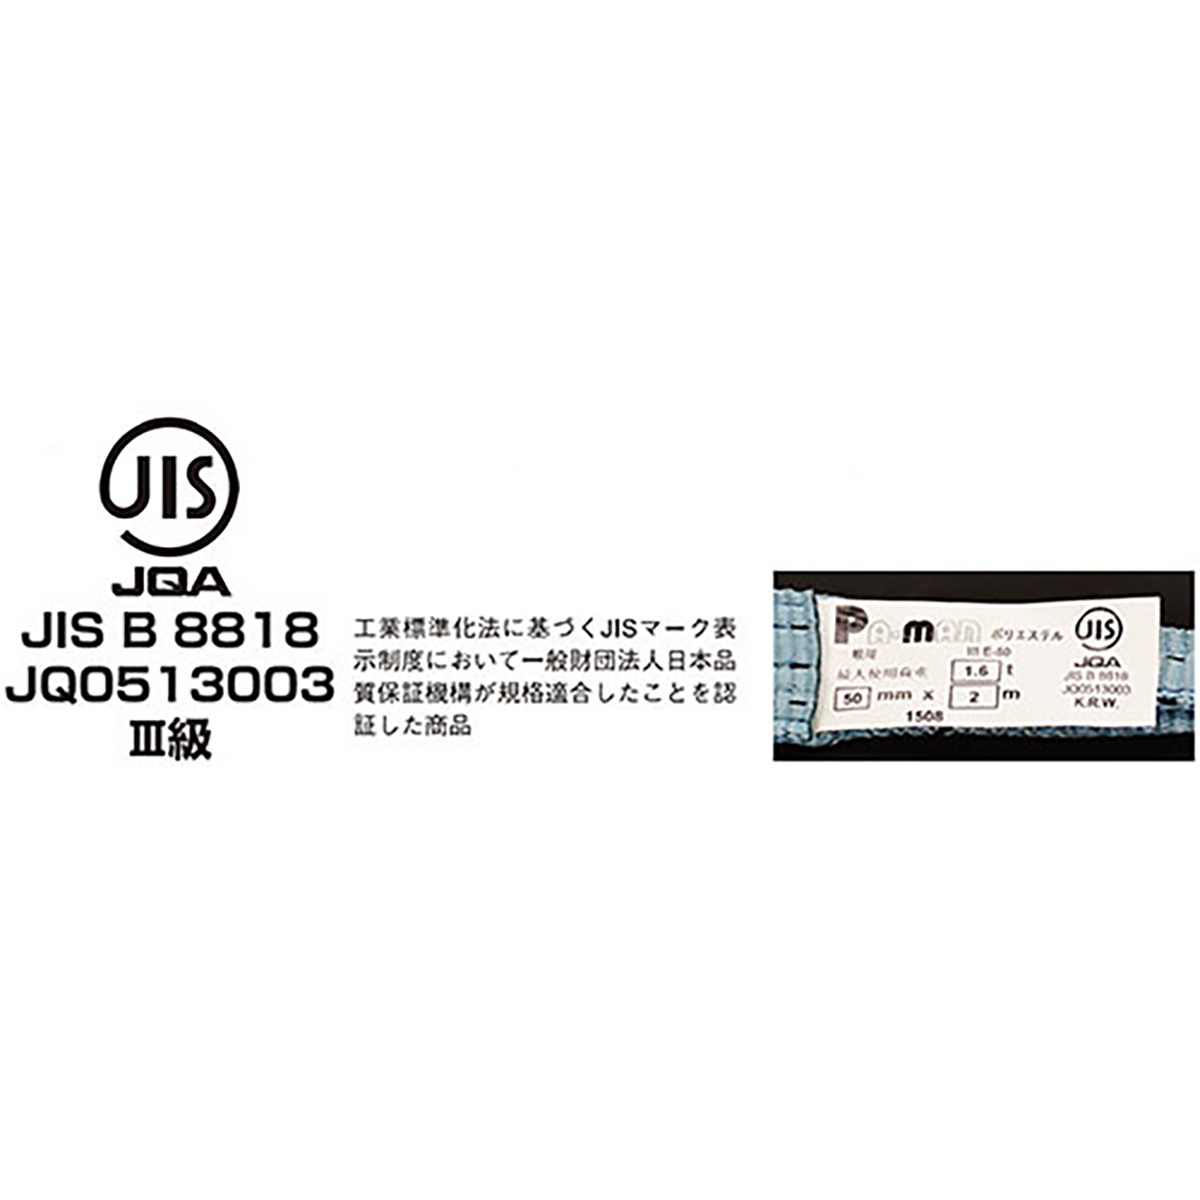 ポリベルトスリング JIS III級 ソフト面付 巾25mm 1m 1本